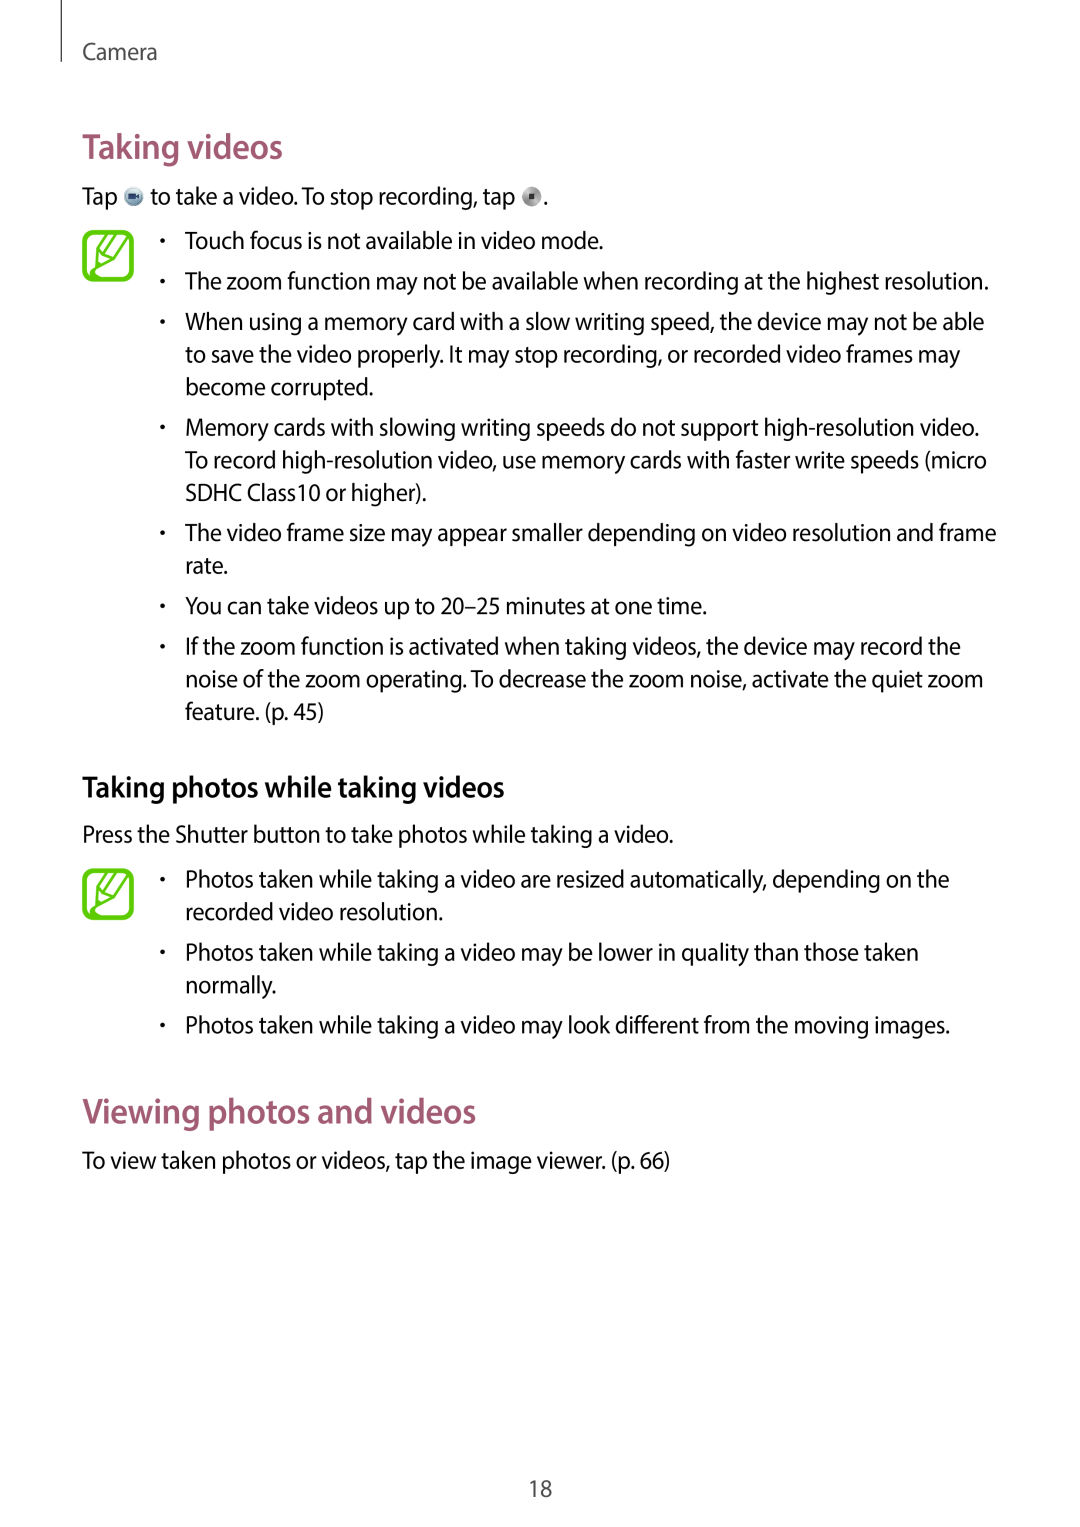 Samsung EK-GC100 user manual Taking videos, Viewing photos and videos, Taking photos while taking videos, Camera 